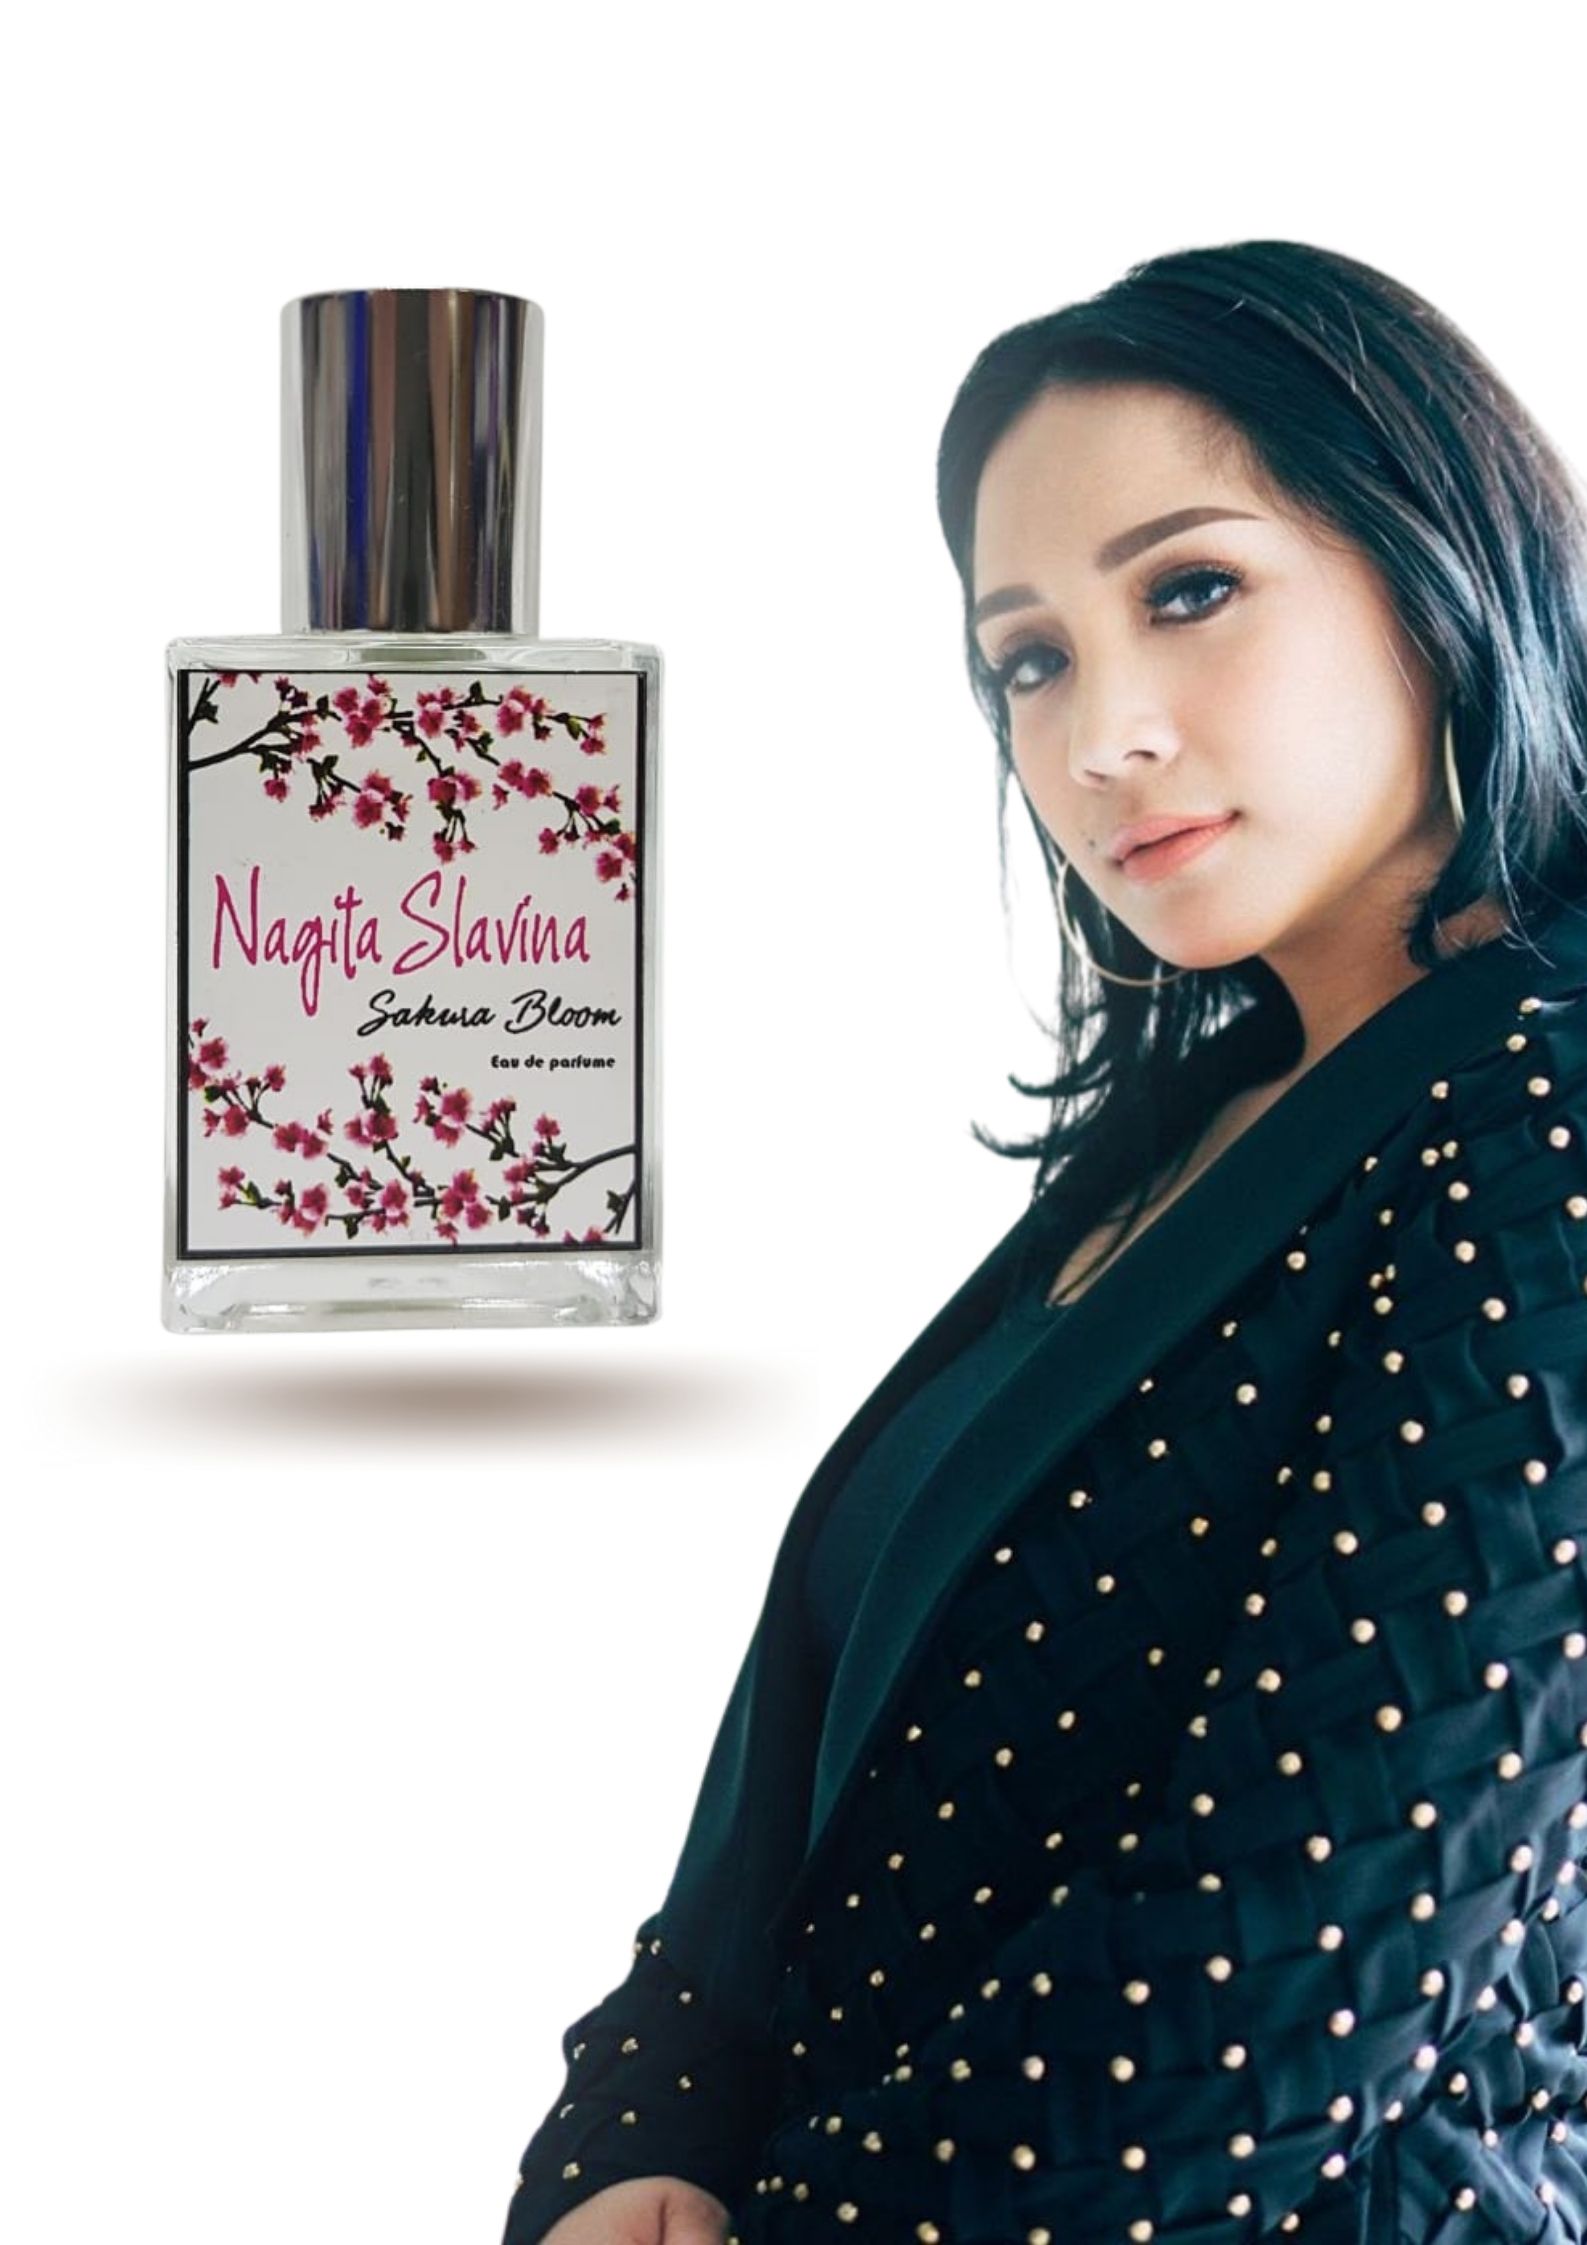 Parfum thailand nagita slavina